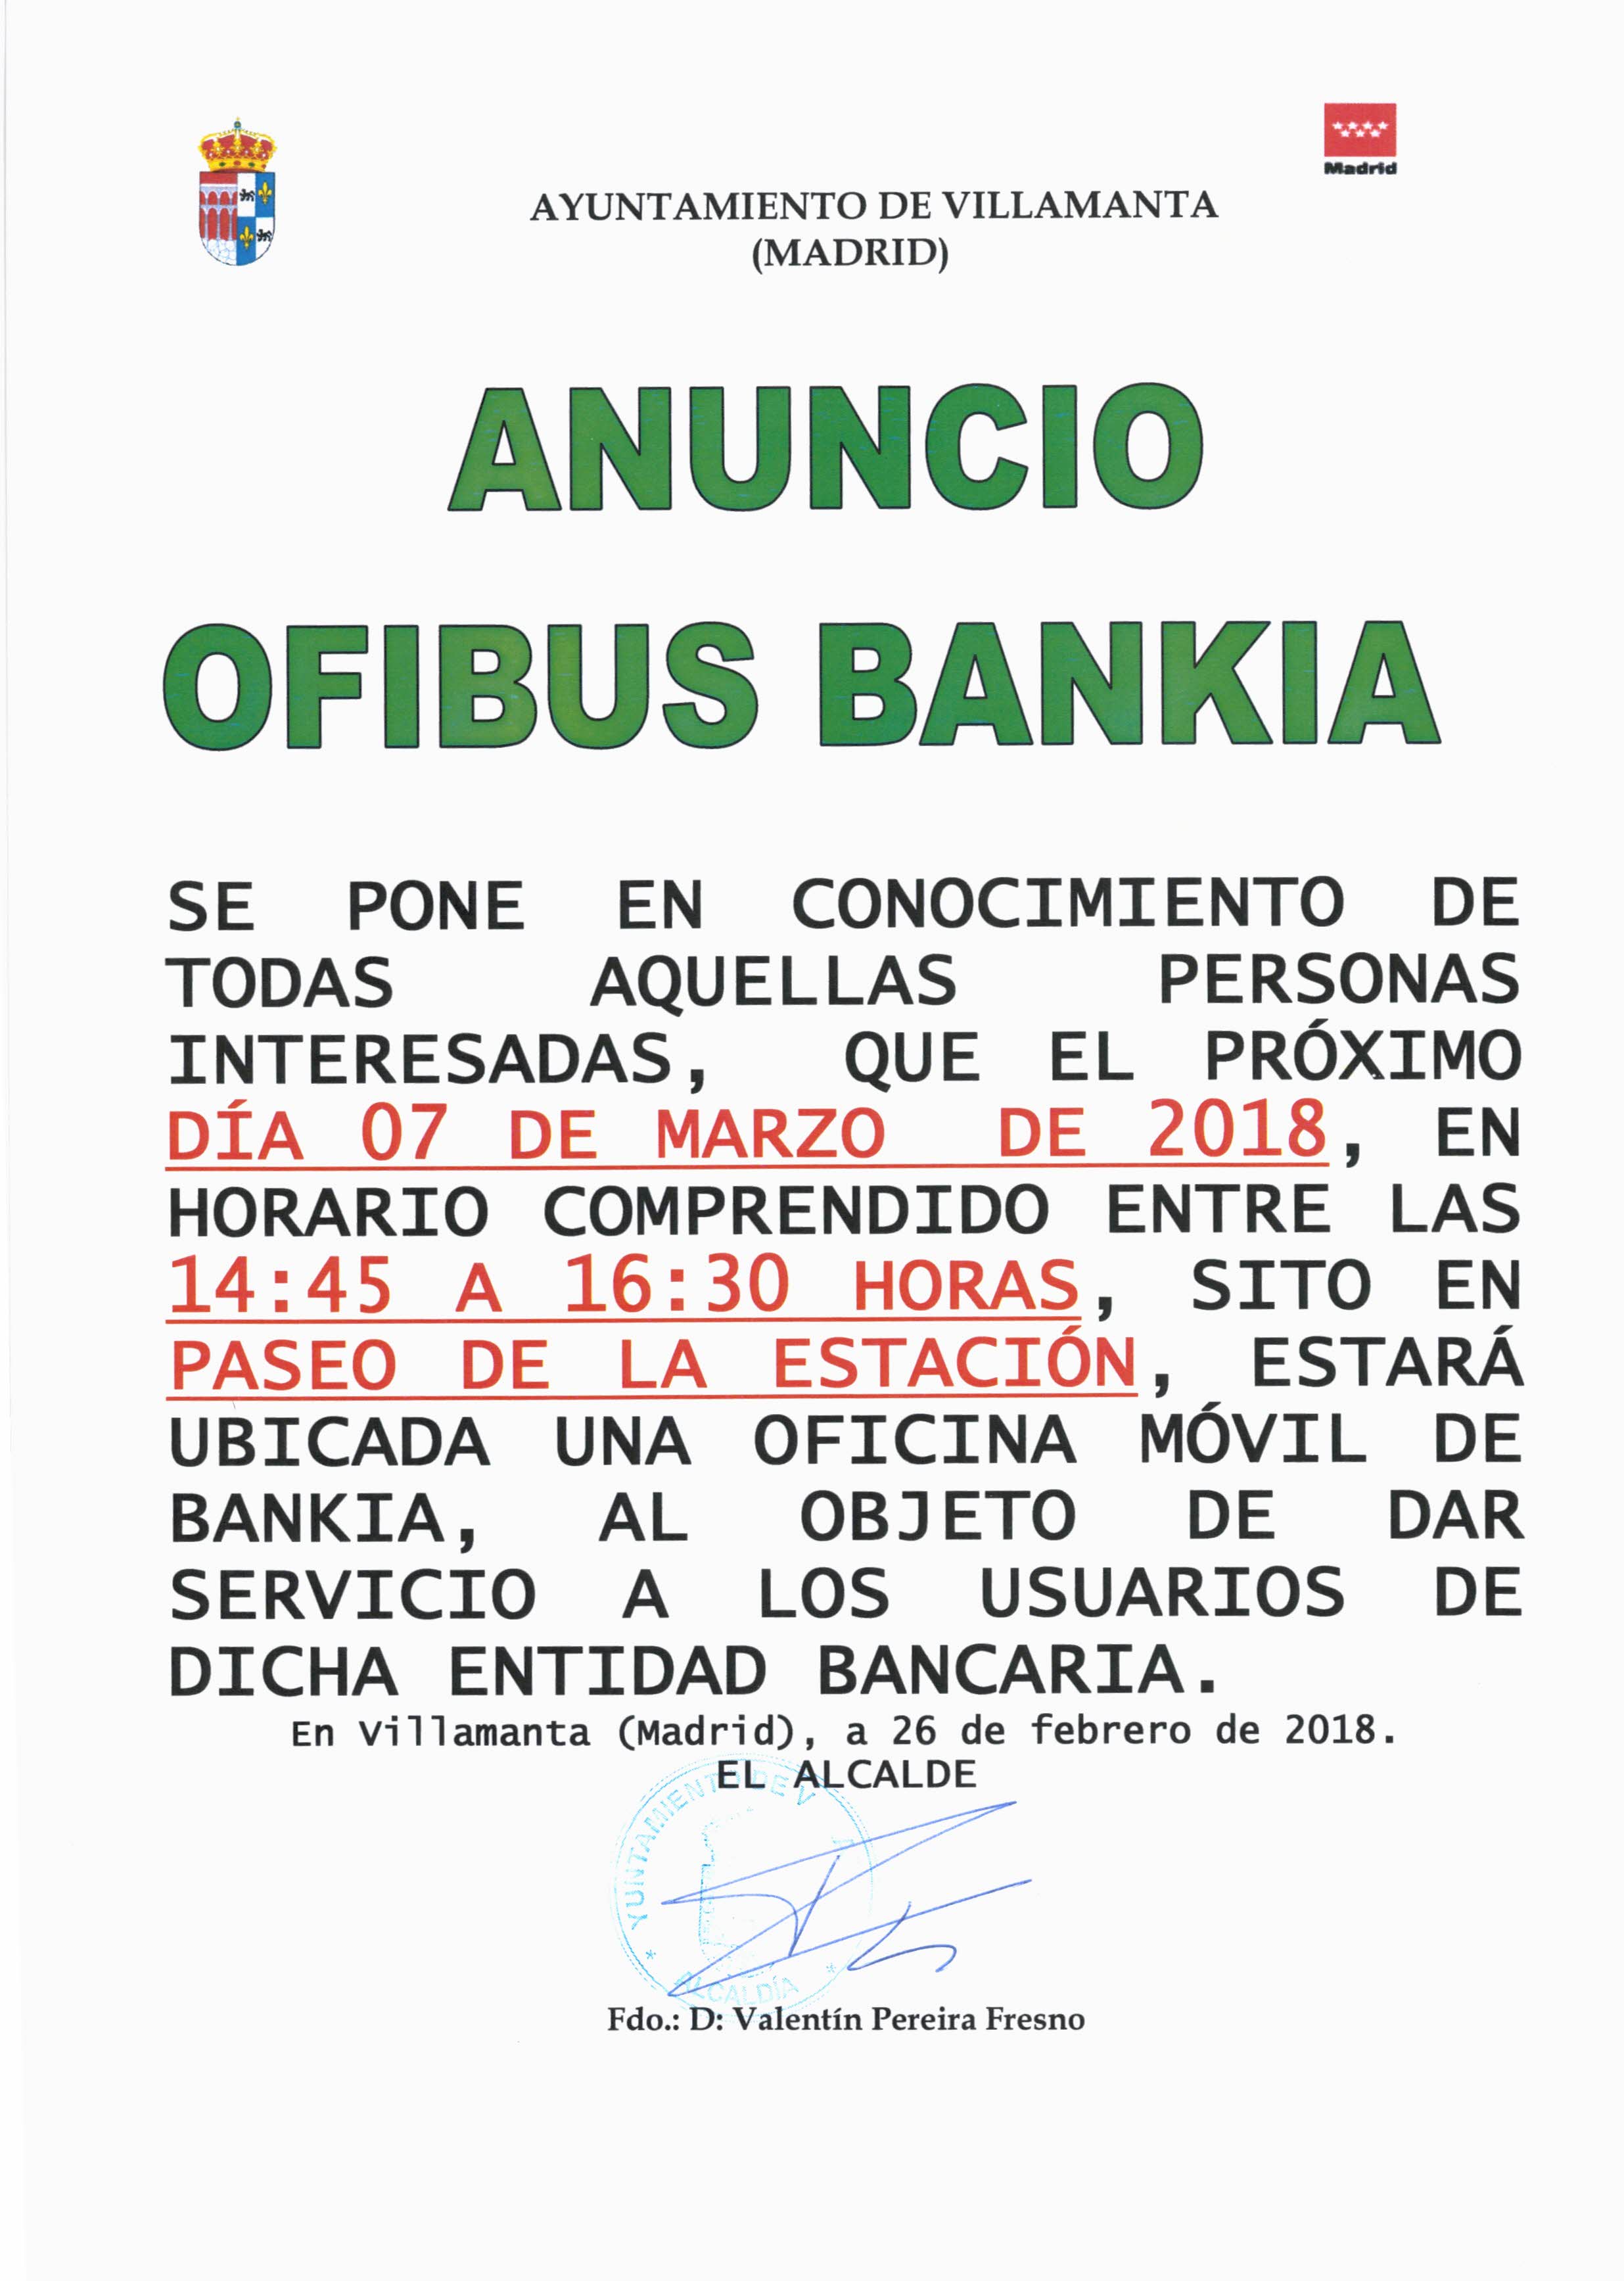 Ofibus Bankia 7 de marzo de 2018